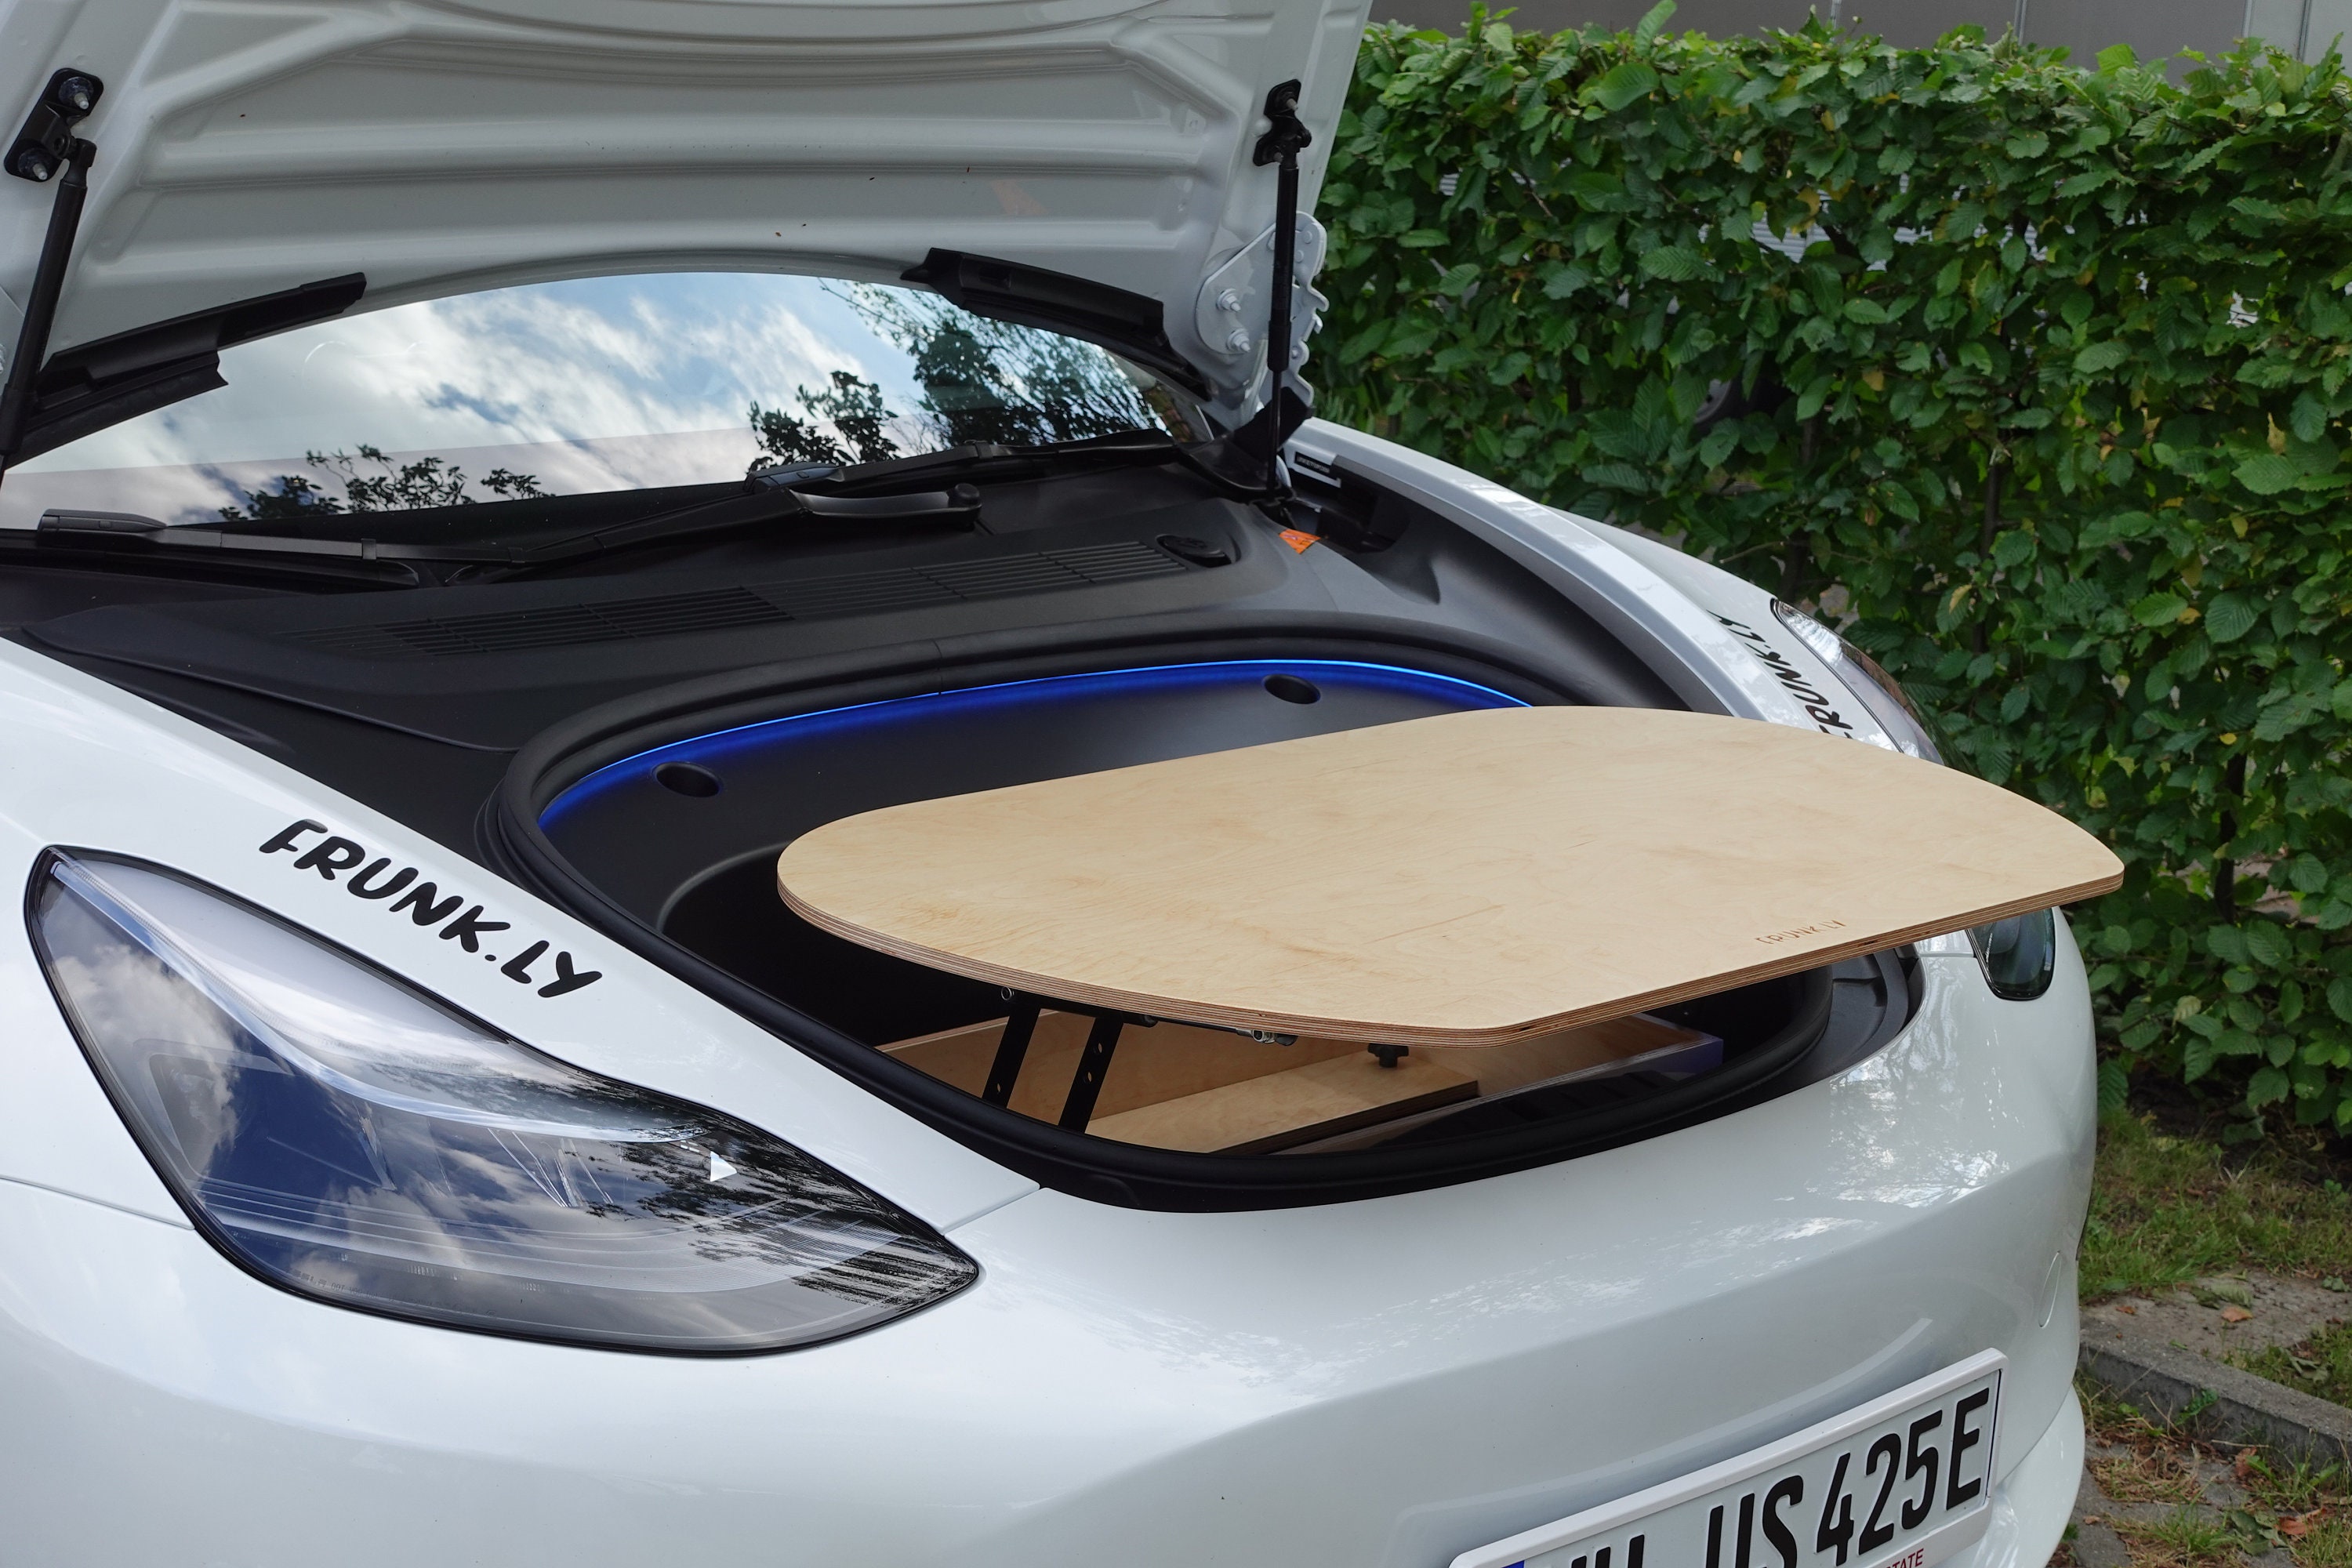 Sitzhaken für Vorder und Rückseite für Tesla Model 3 / Y